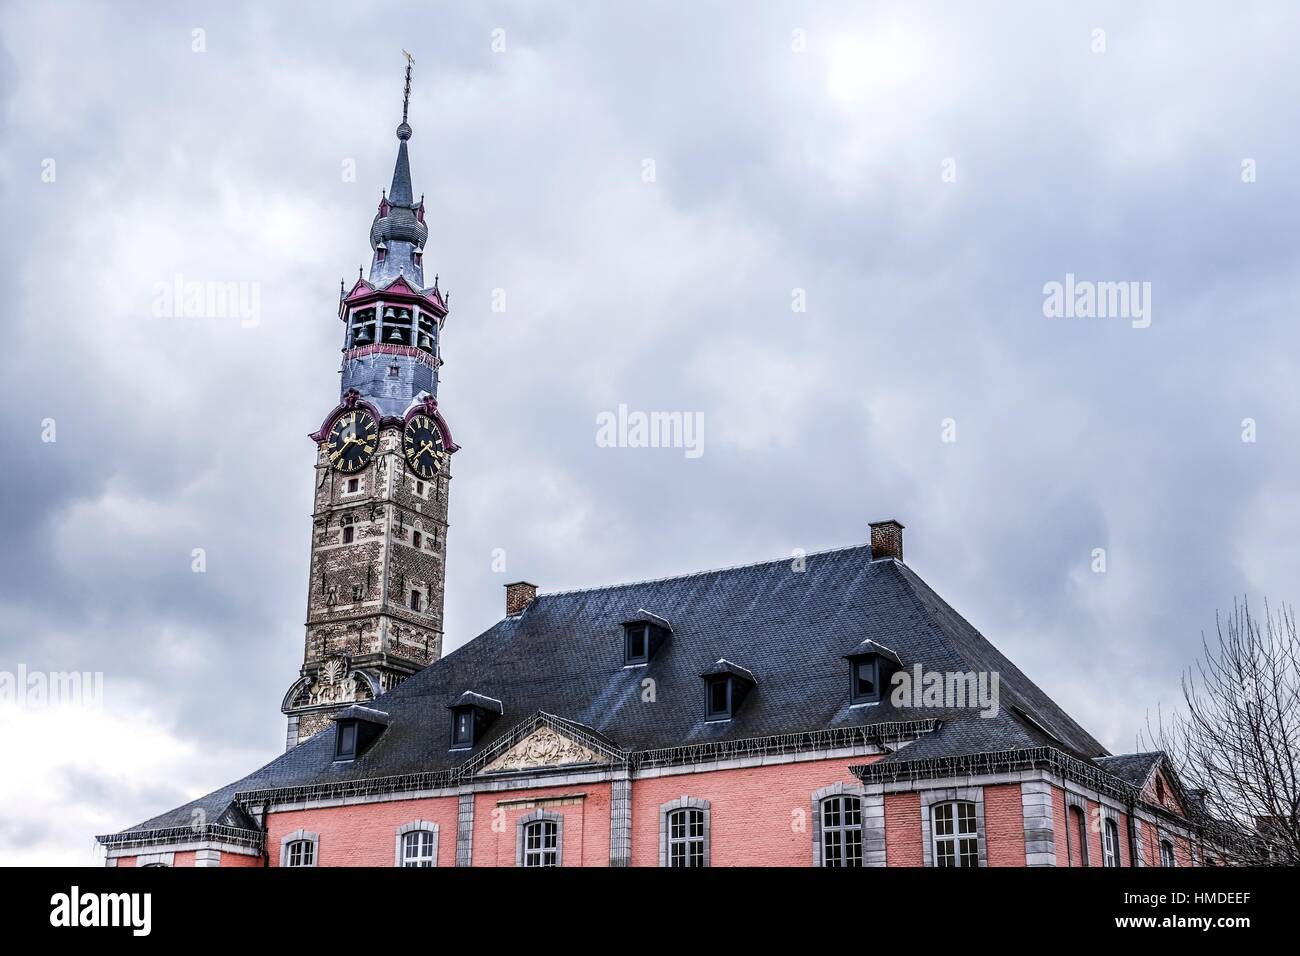 L'hôtel de ville dans le centre historique de SINT-TRUIDEN (Belgique), avec une tour du 17ème siècle classé par l'Unesco comme site du patrimoine mondial en 1999. Banque D'Images